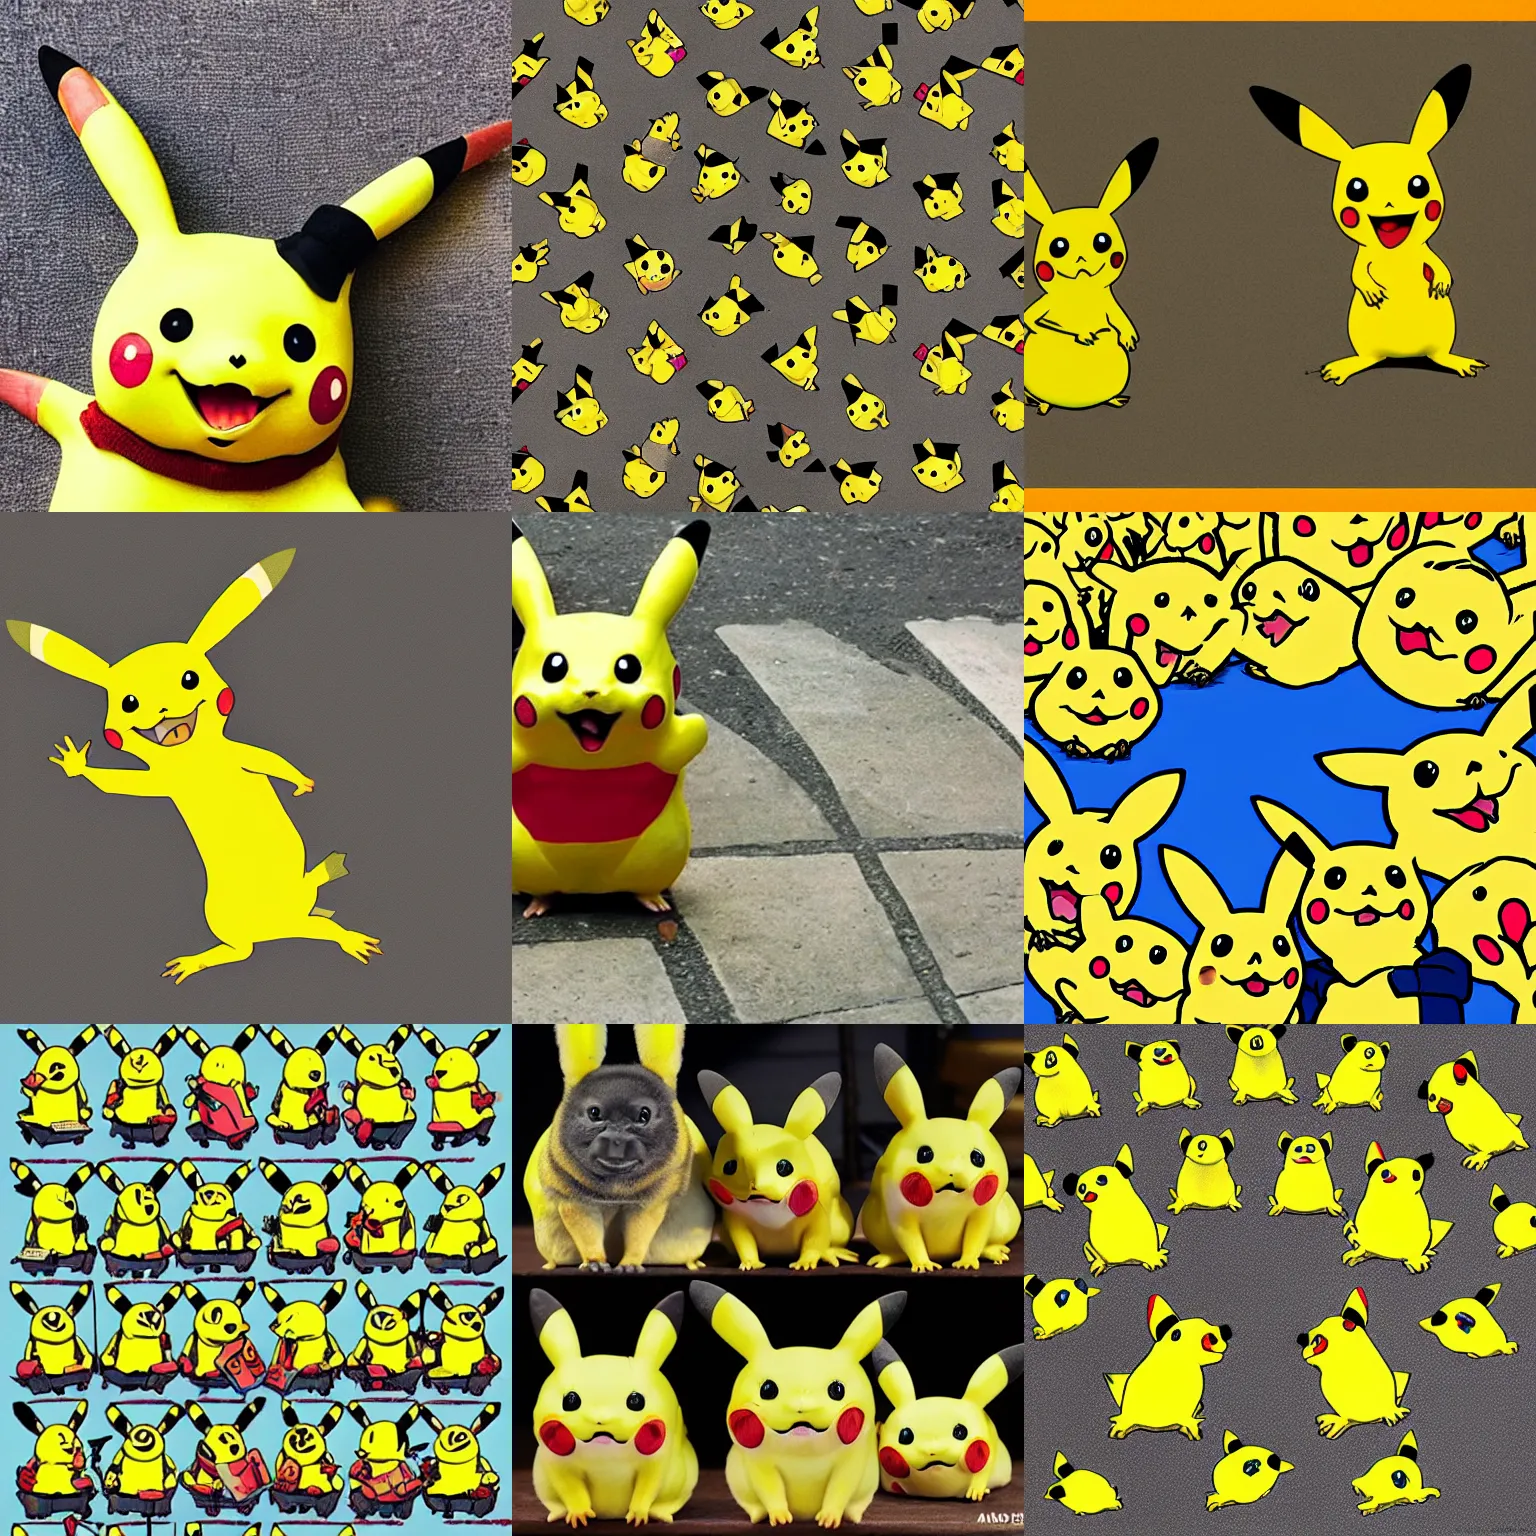 Prompt: A 100 pikachus